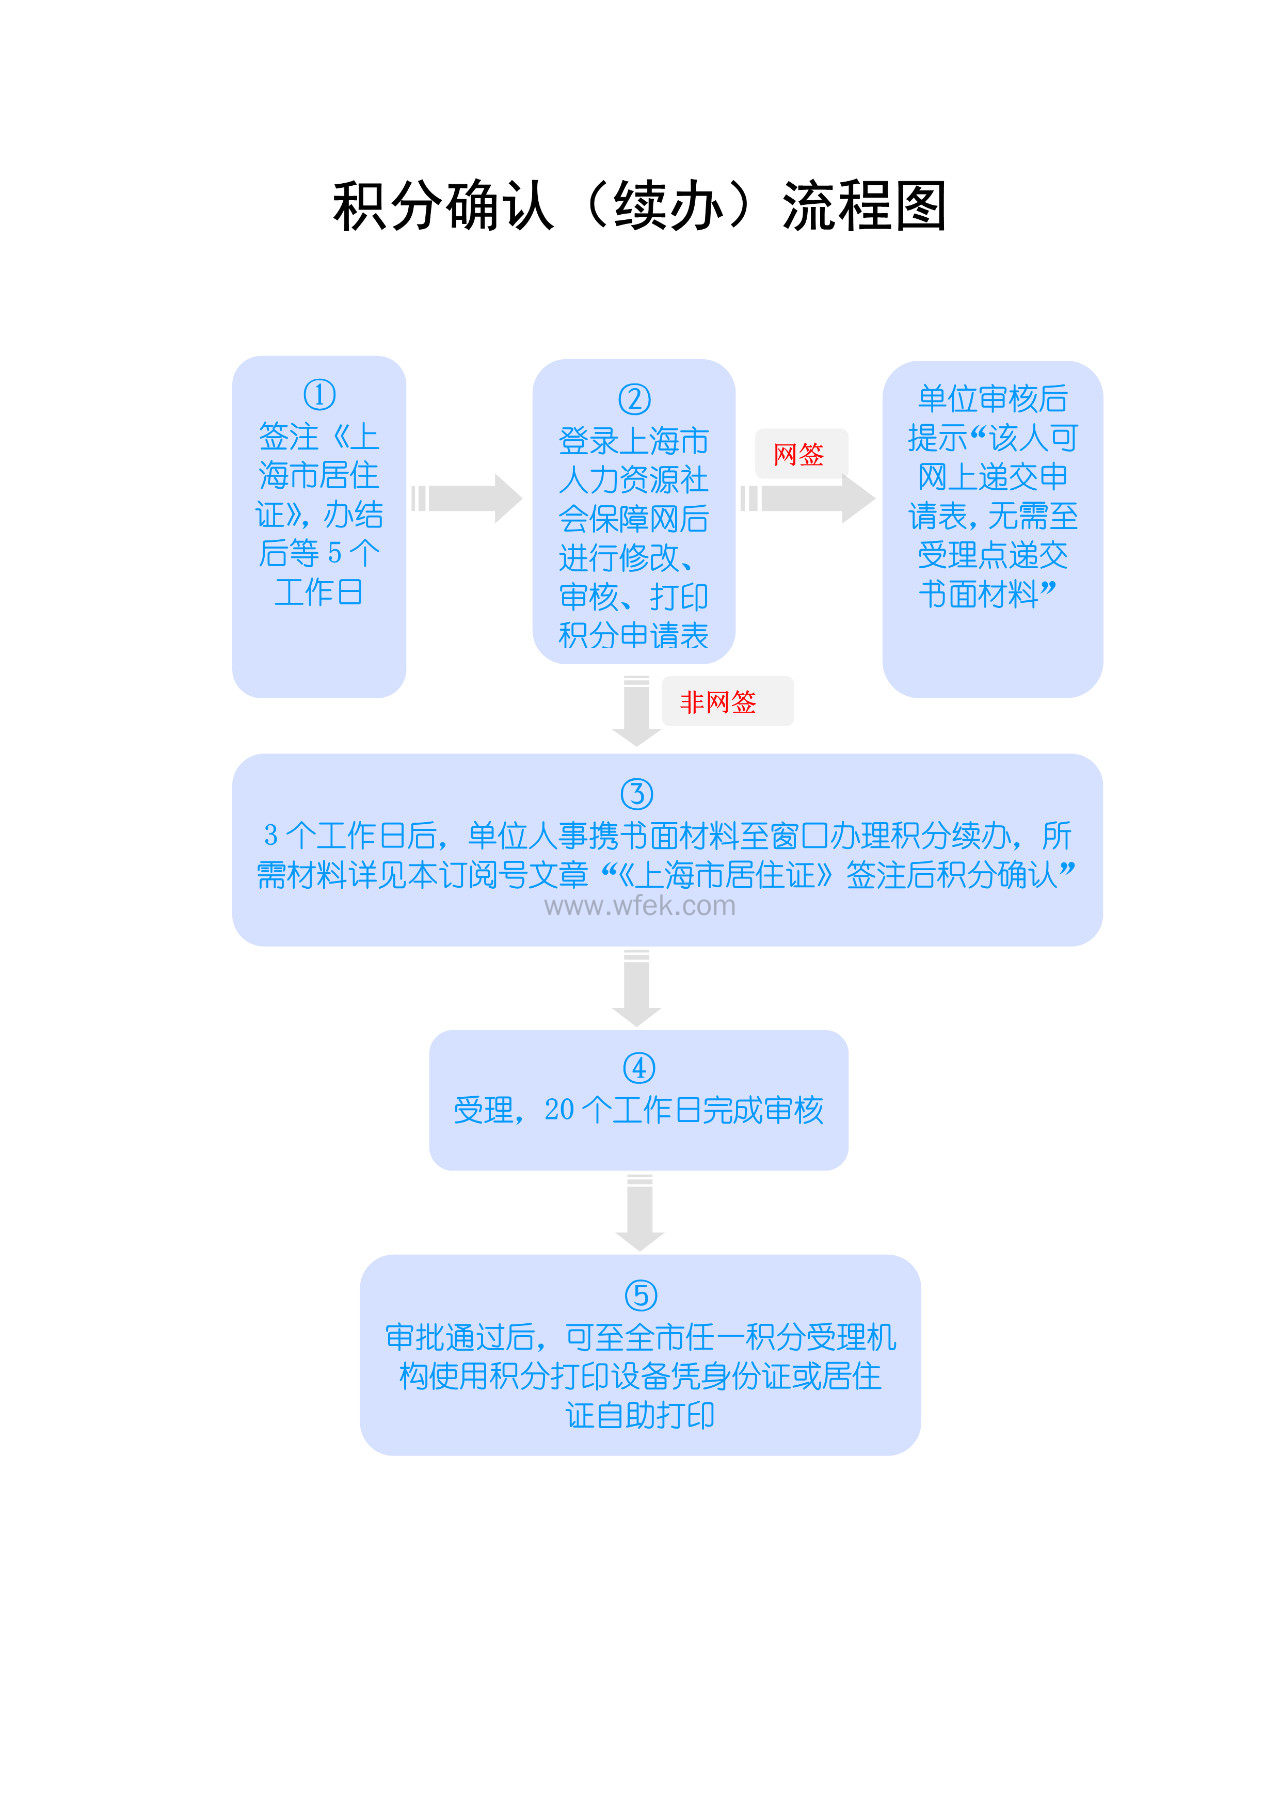 上海积分办理流程